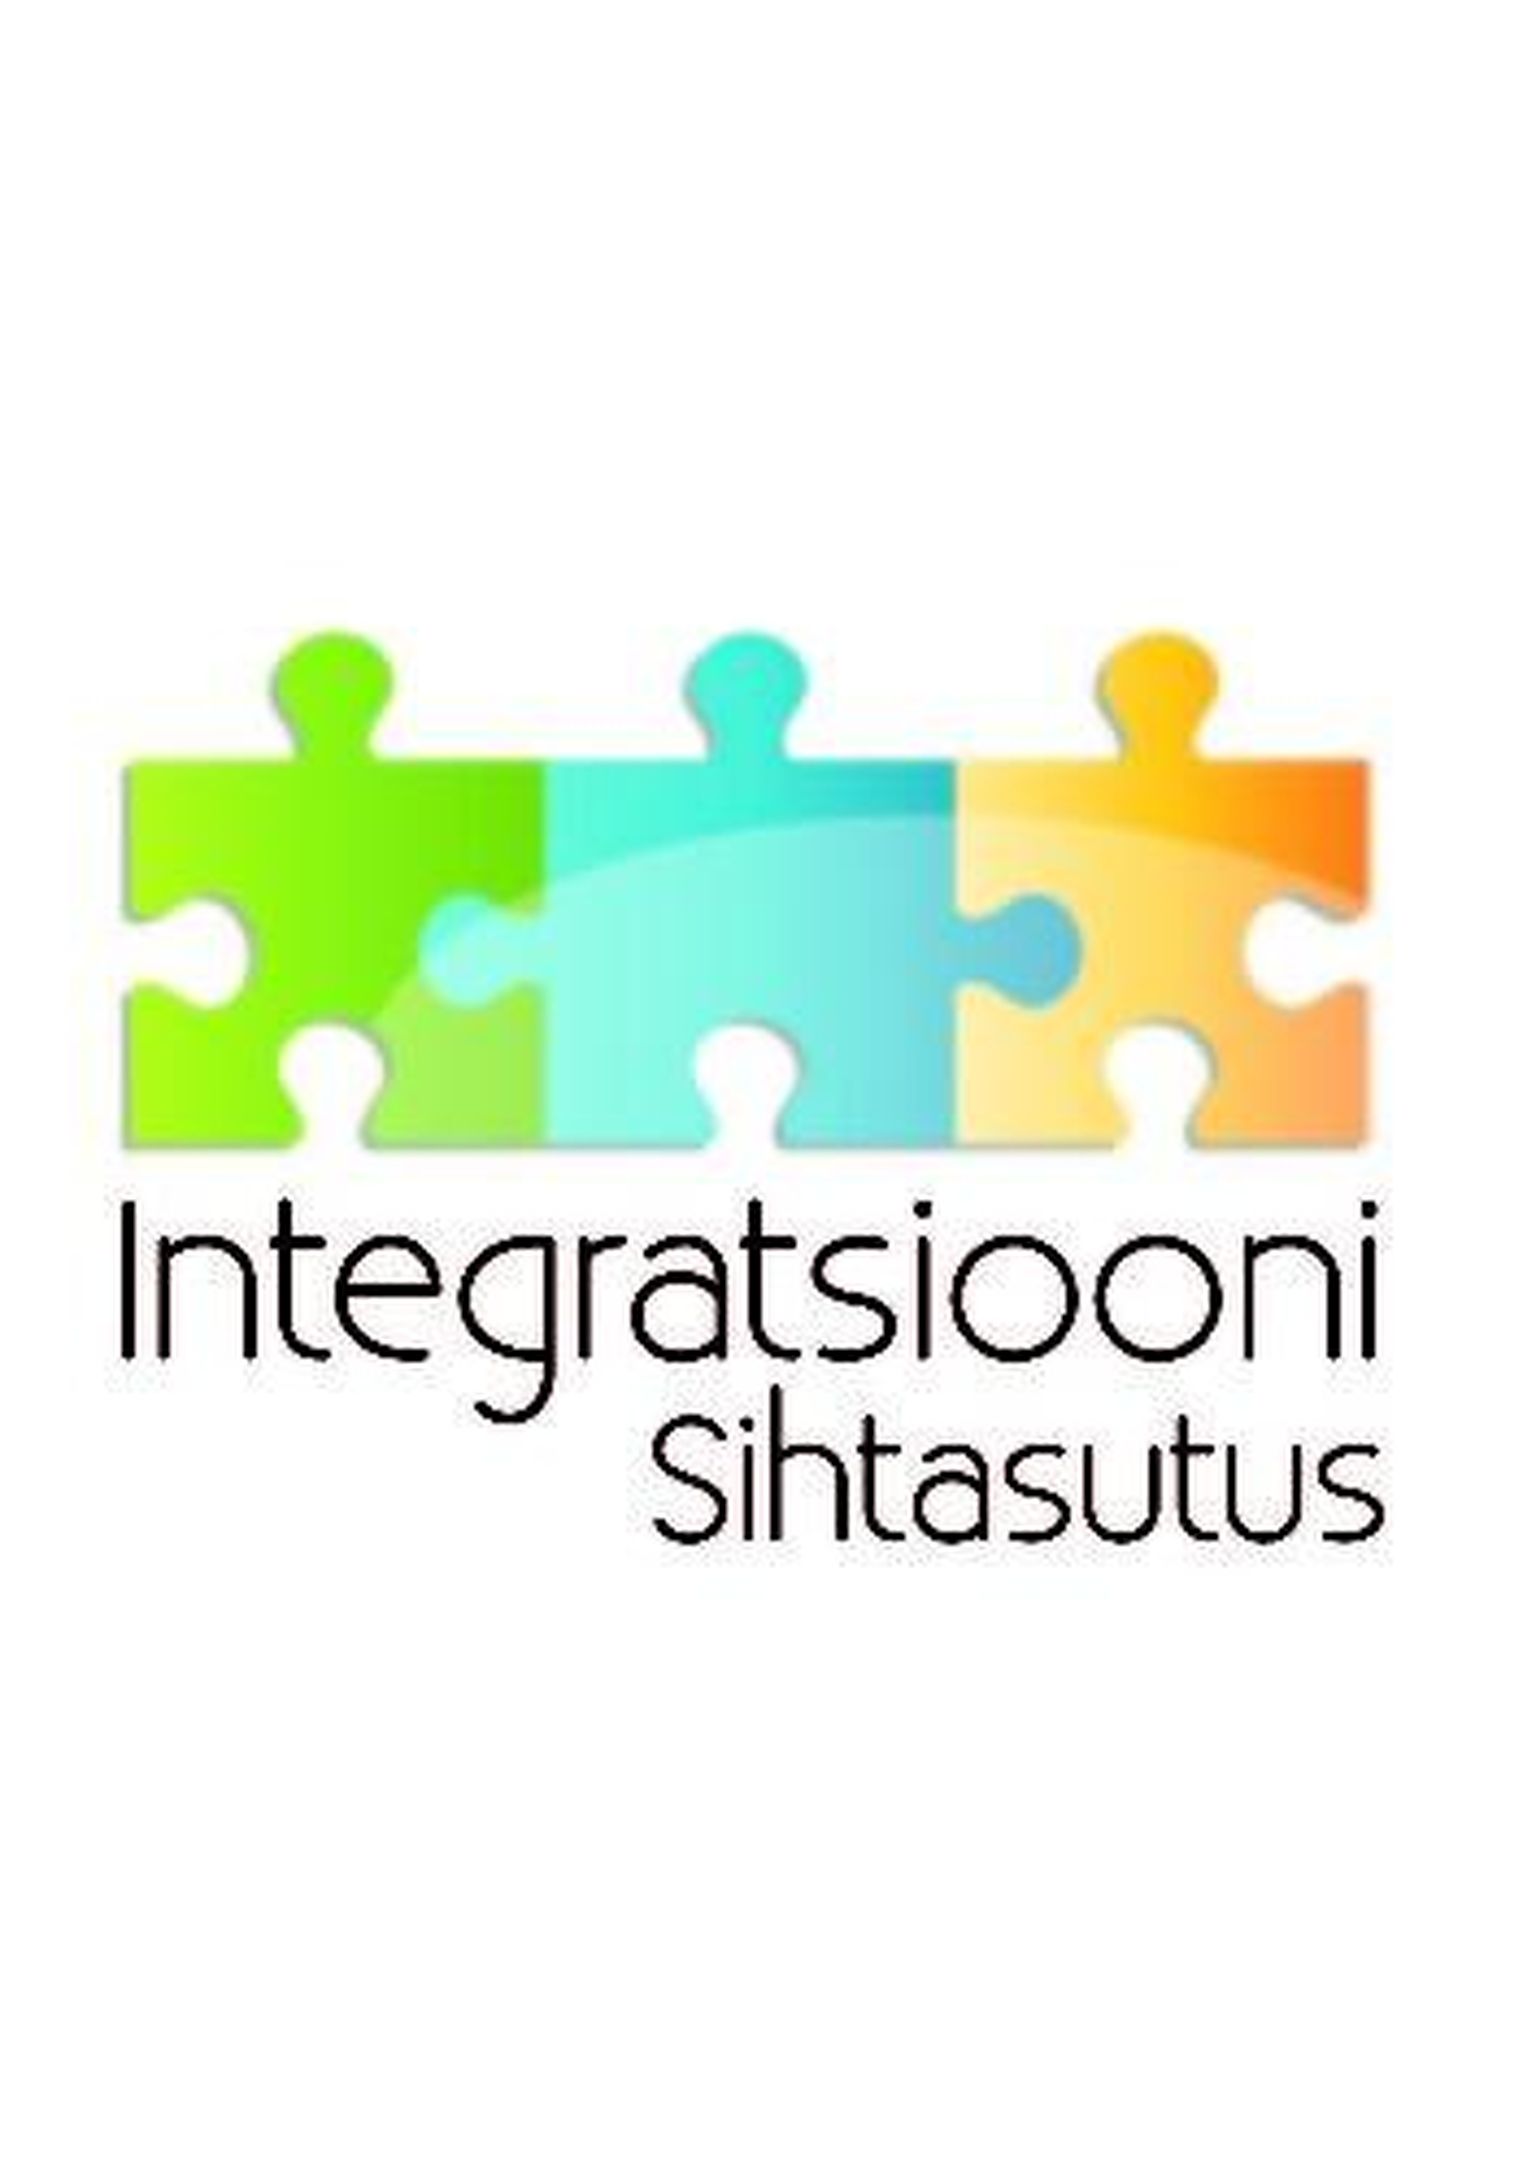 Integratsiooni sihtasutuse logo.